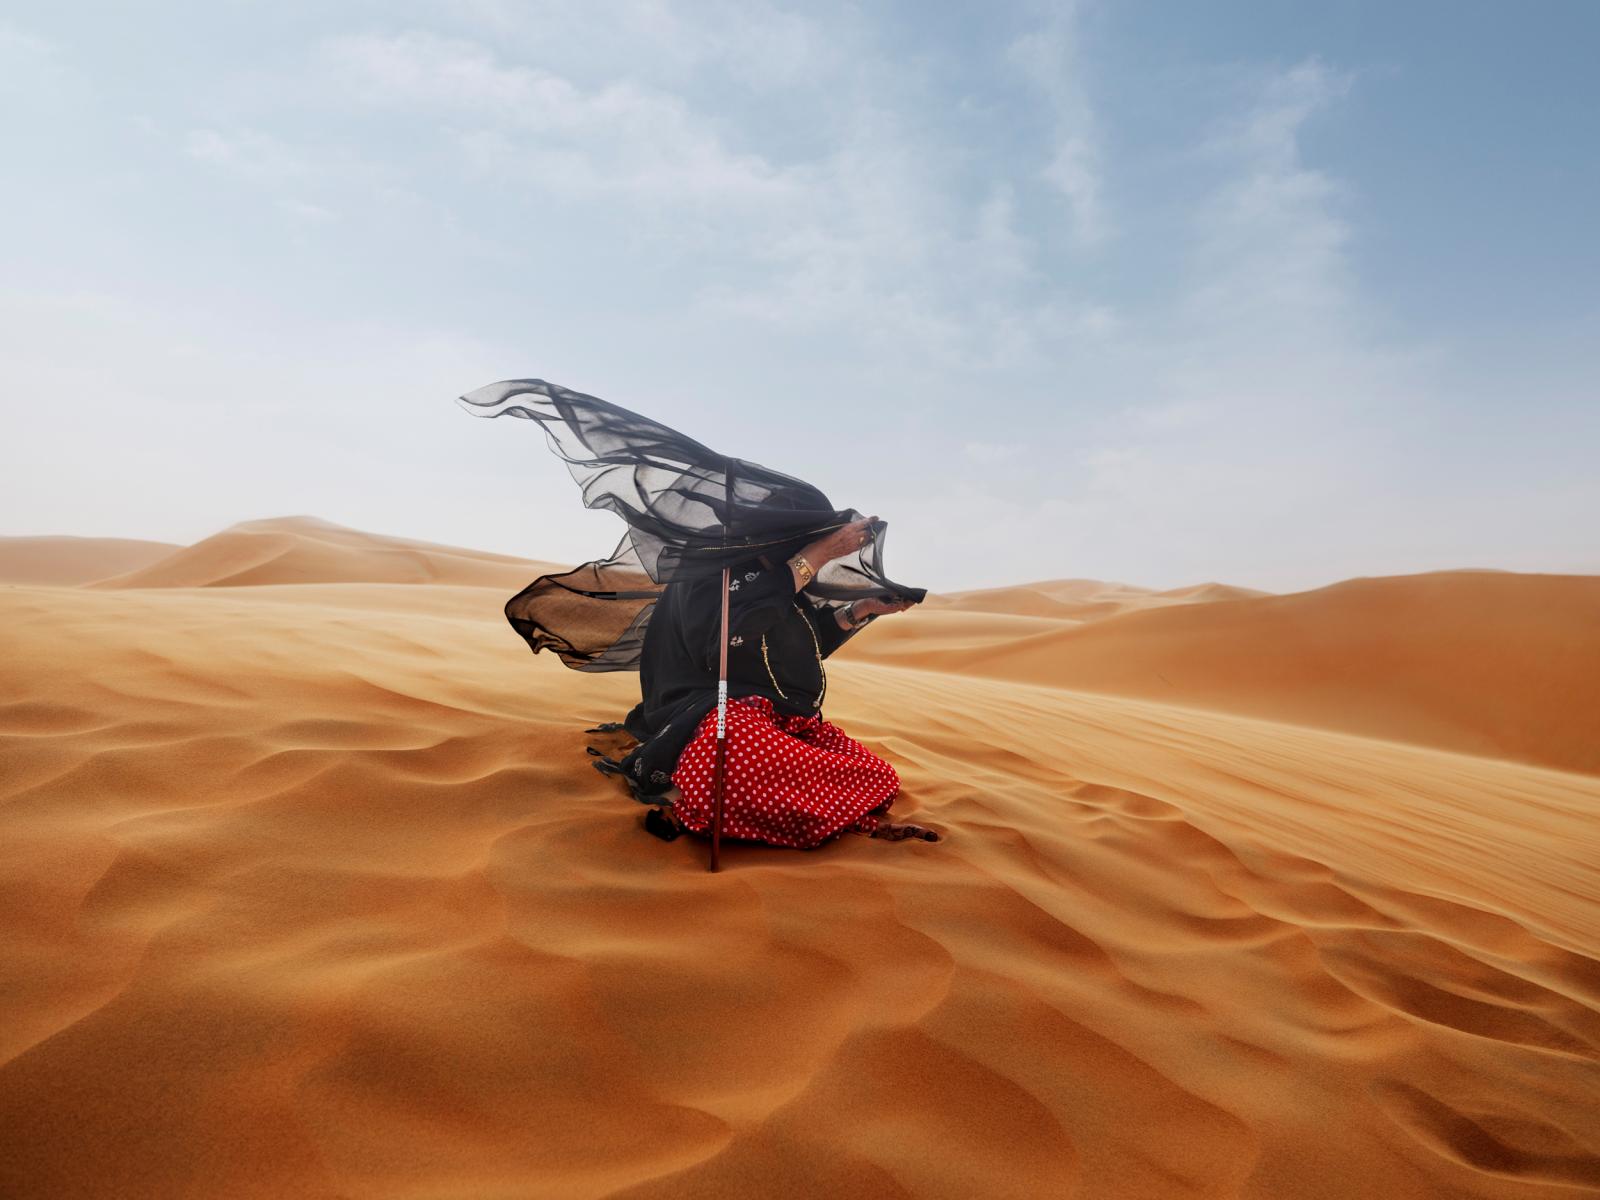 Fatima in a desert storm in Liwa, UAE